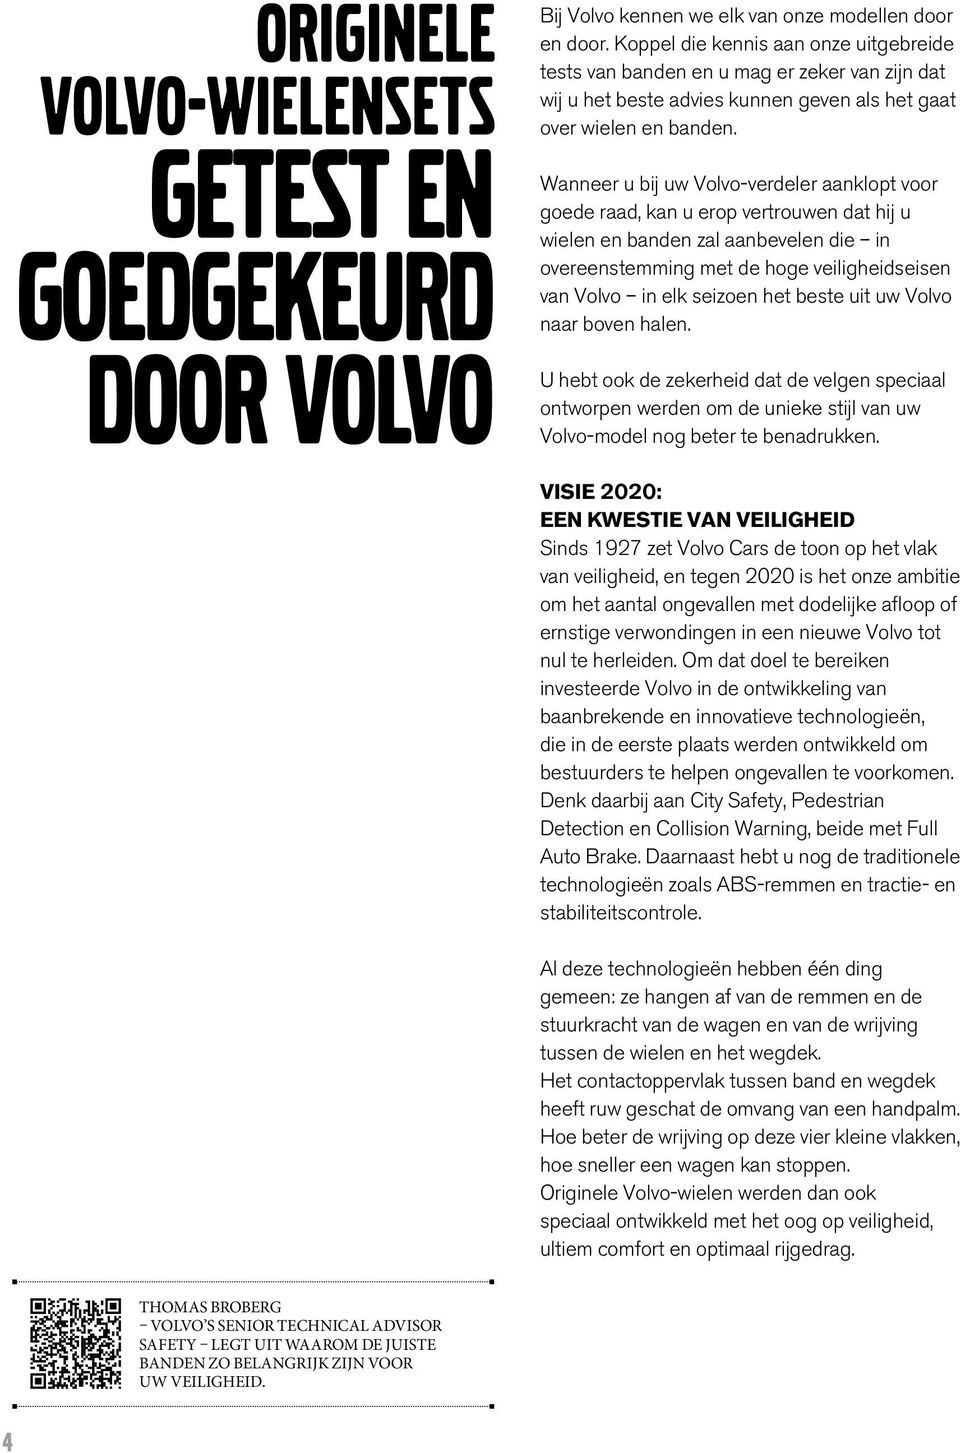 Wanr u bij uw Volvo-verdeler aanklopt voor goede raad, kan u erop vertrouwen dat hij u wielen en banden zal aanbevelen die in overeenstemming met de hoge veiligheidseisen van Volvo in elk seizoen het